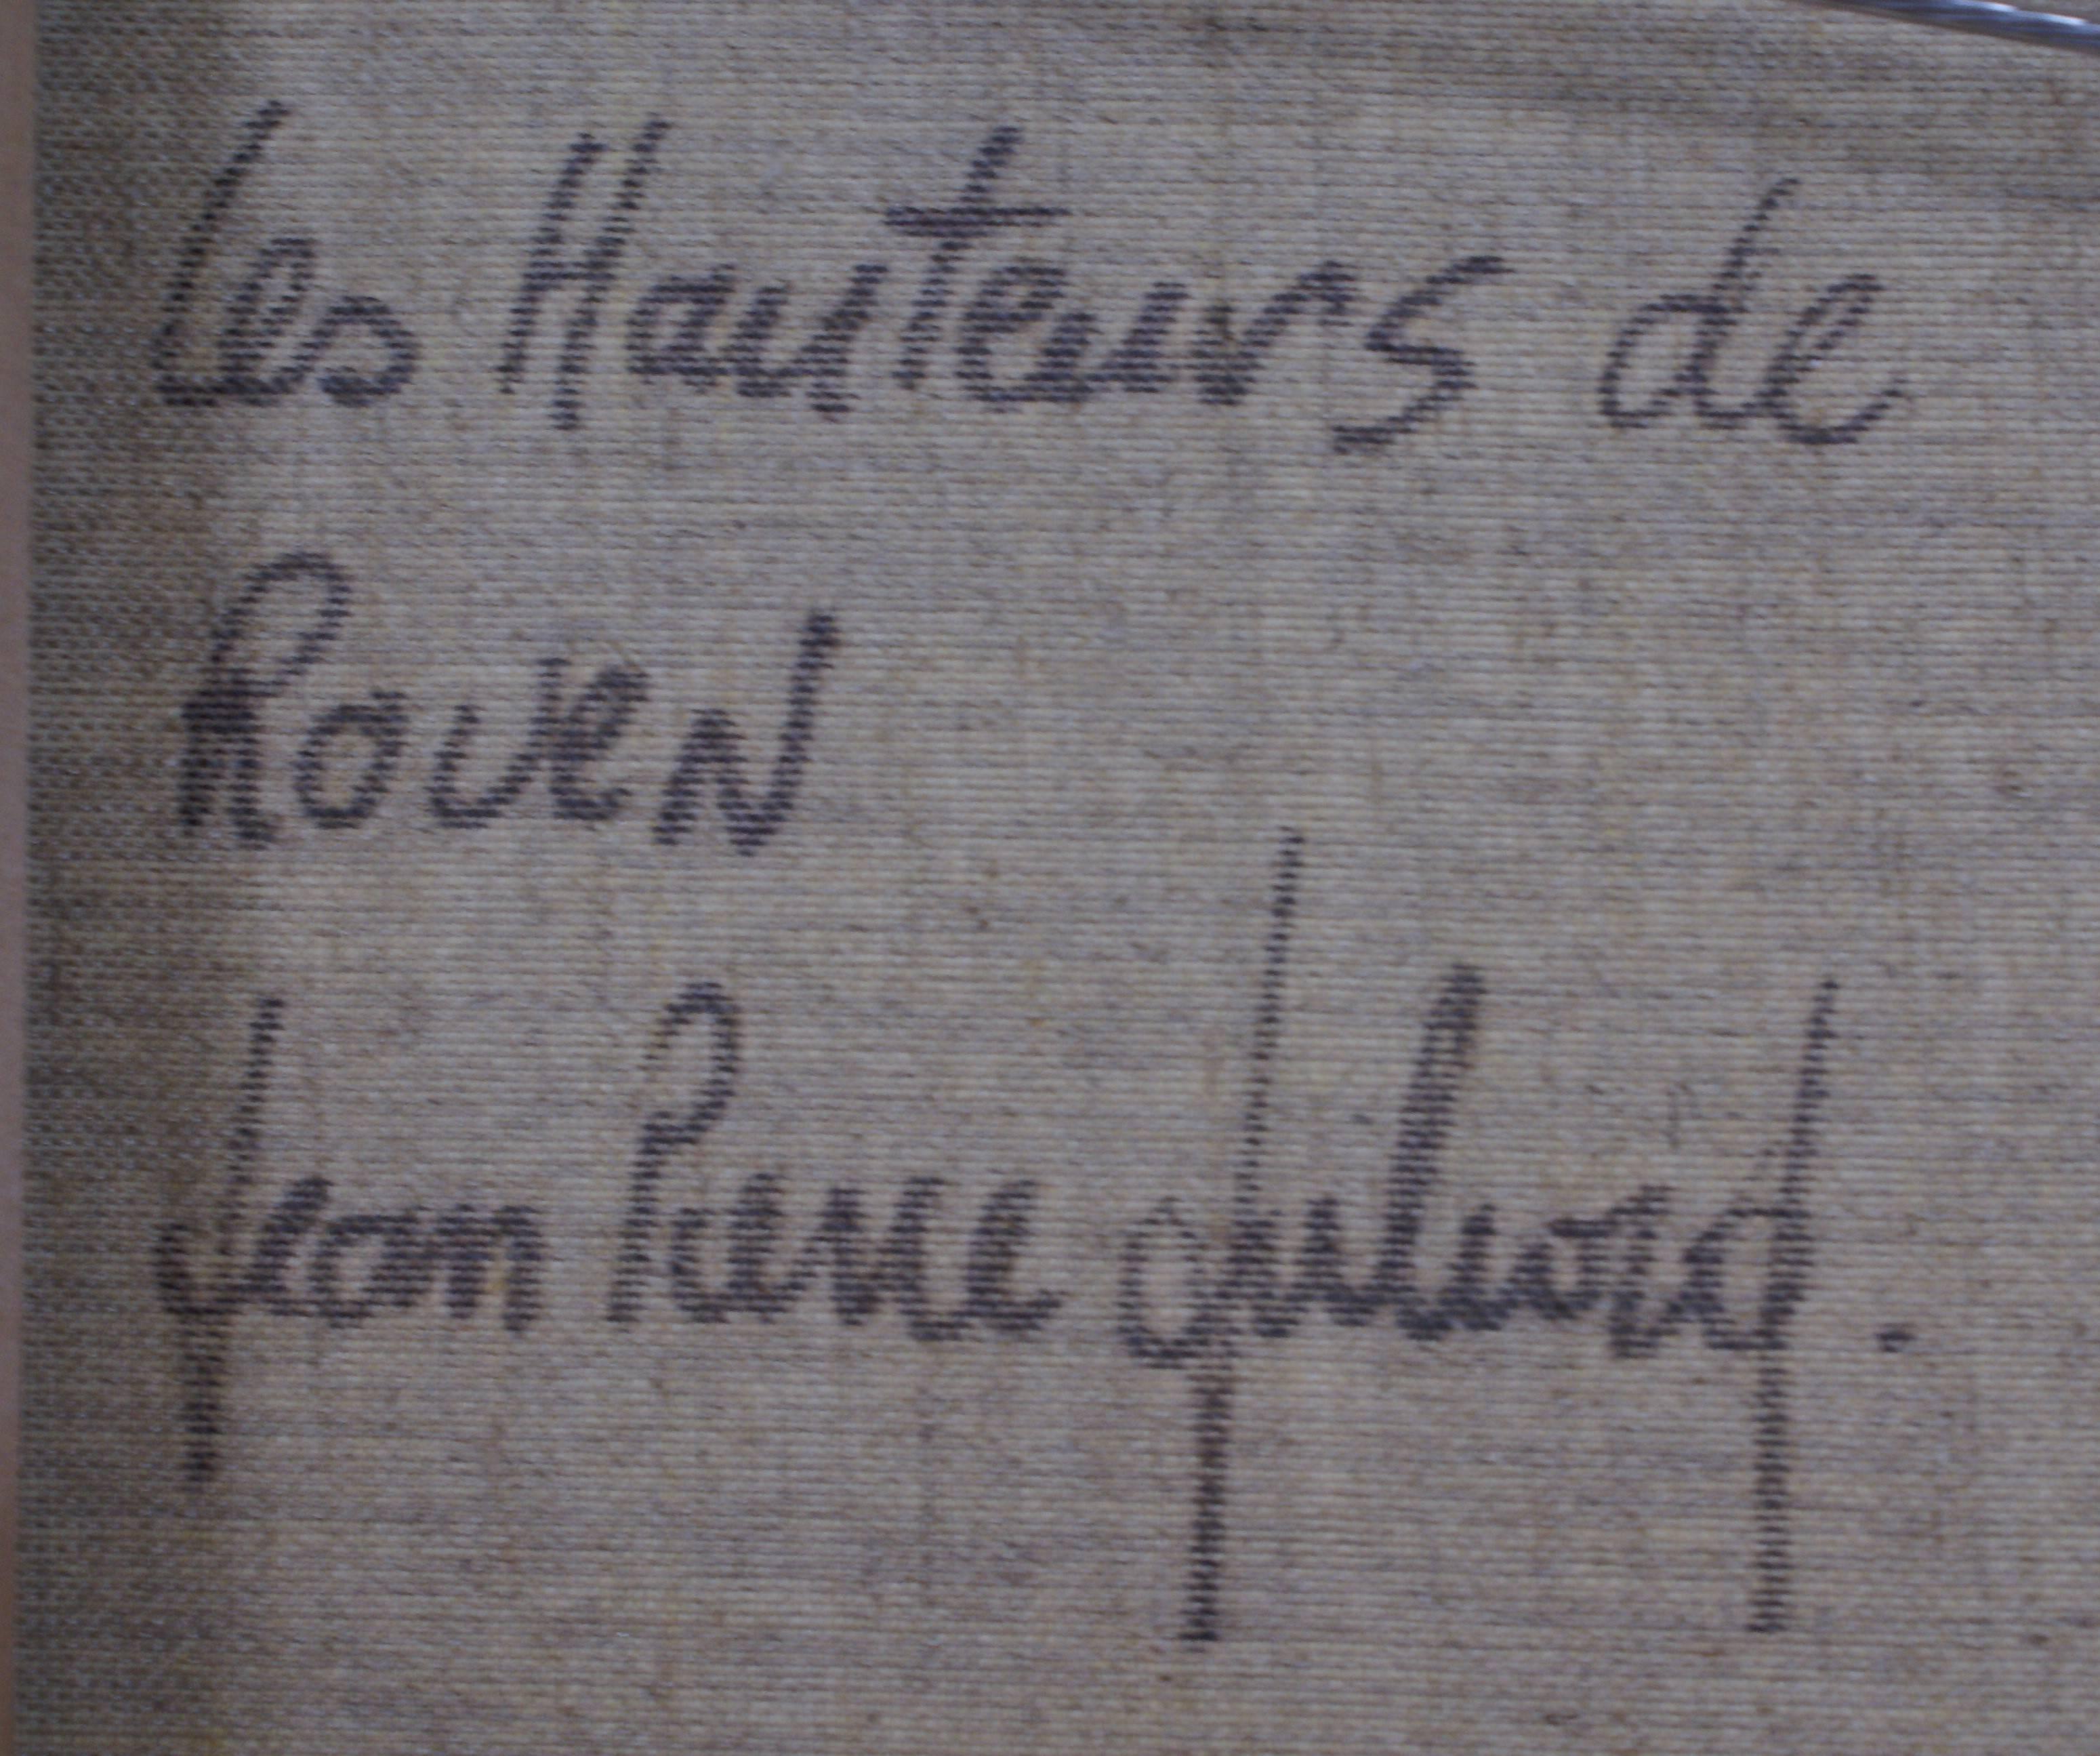 Les Hauteurs de Rouen (The Heights of Rouen) 3